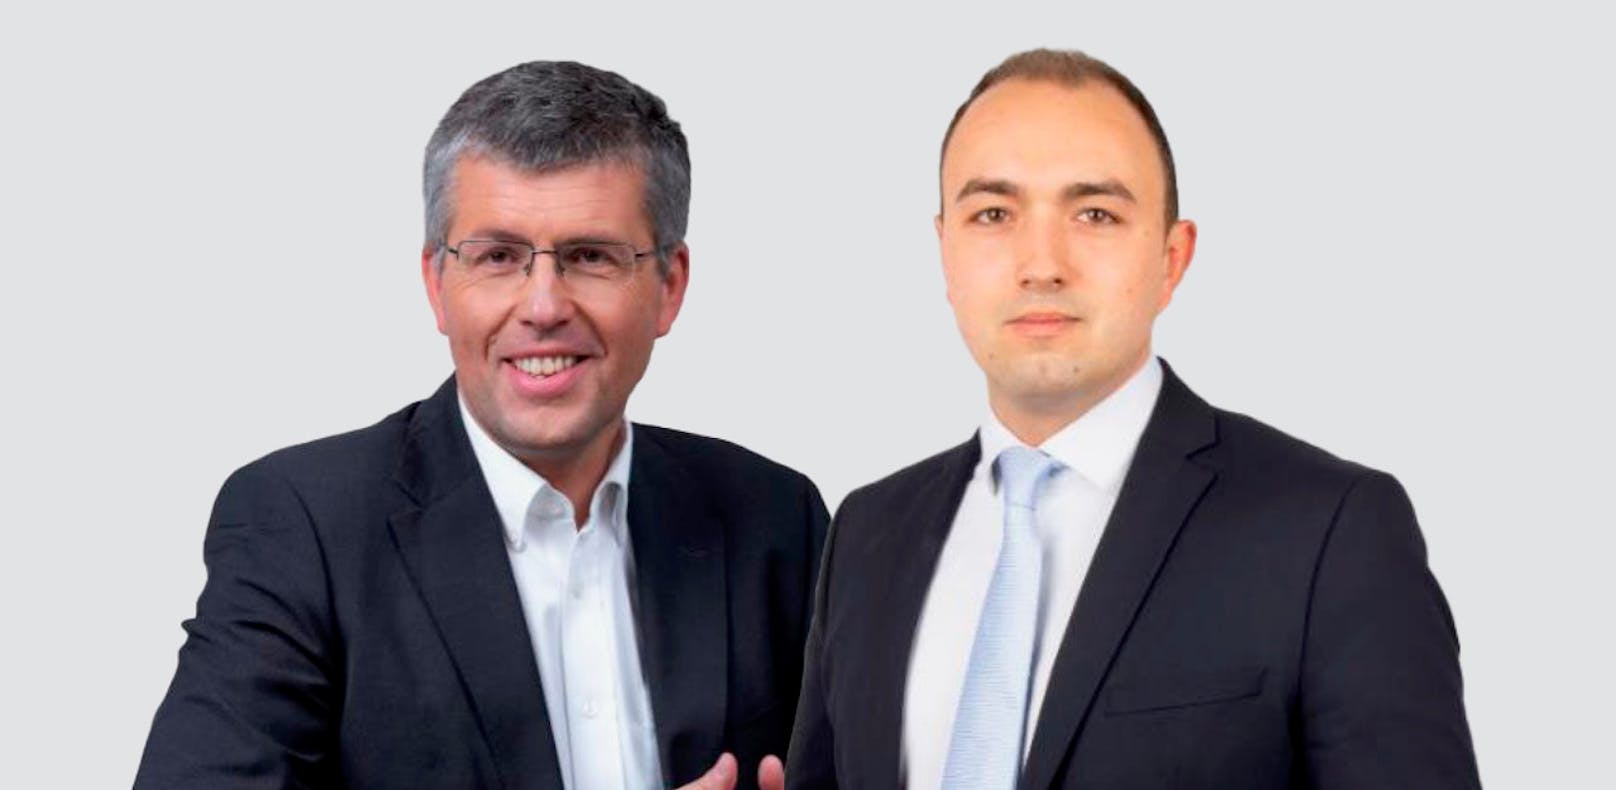 Bürgermeister Martin Schuster (VP) und Gemeinderat Alexander Murlasits (FP, r.)